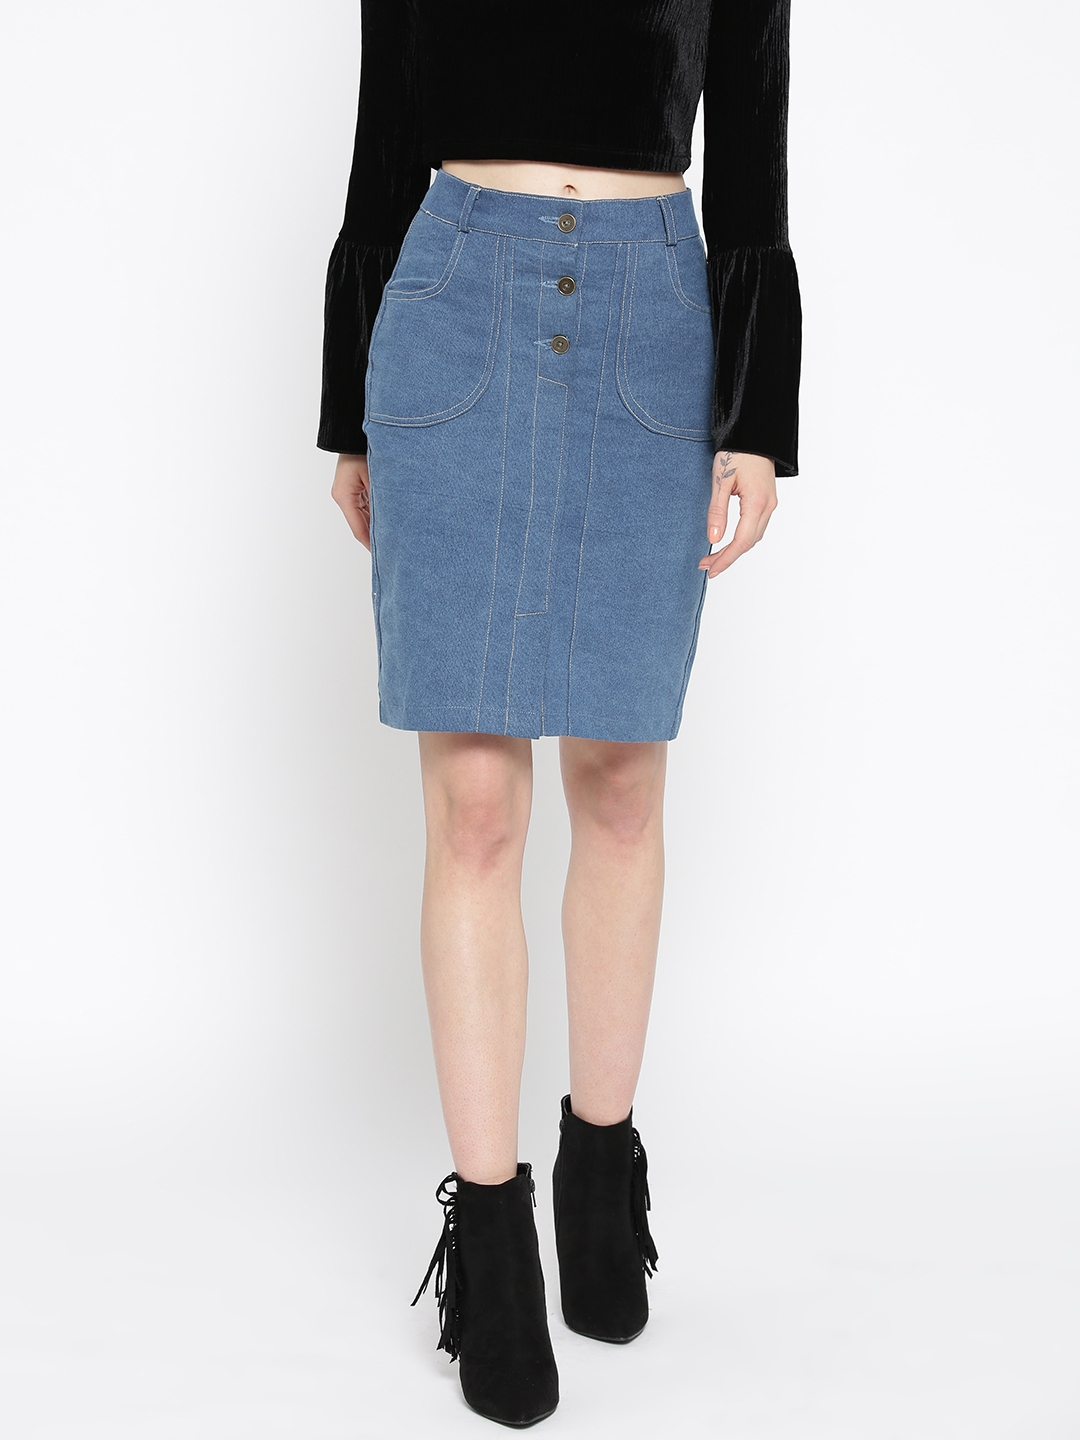 Skirts for Women  Buy Short Mini  Long Skirts Online  Myntra